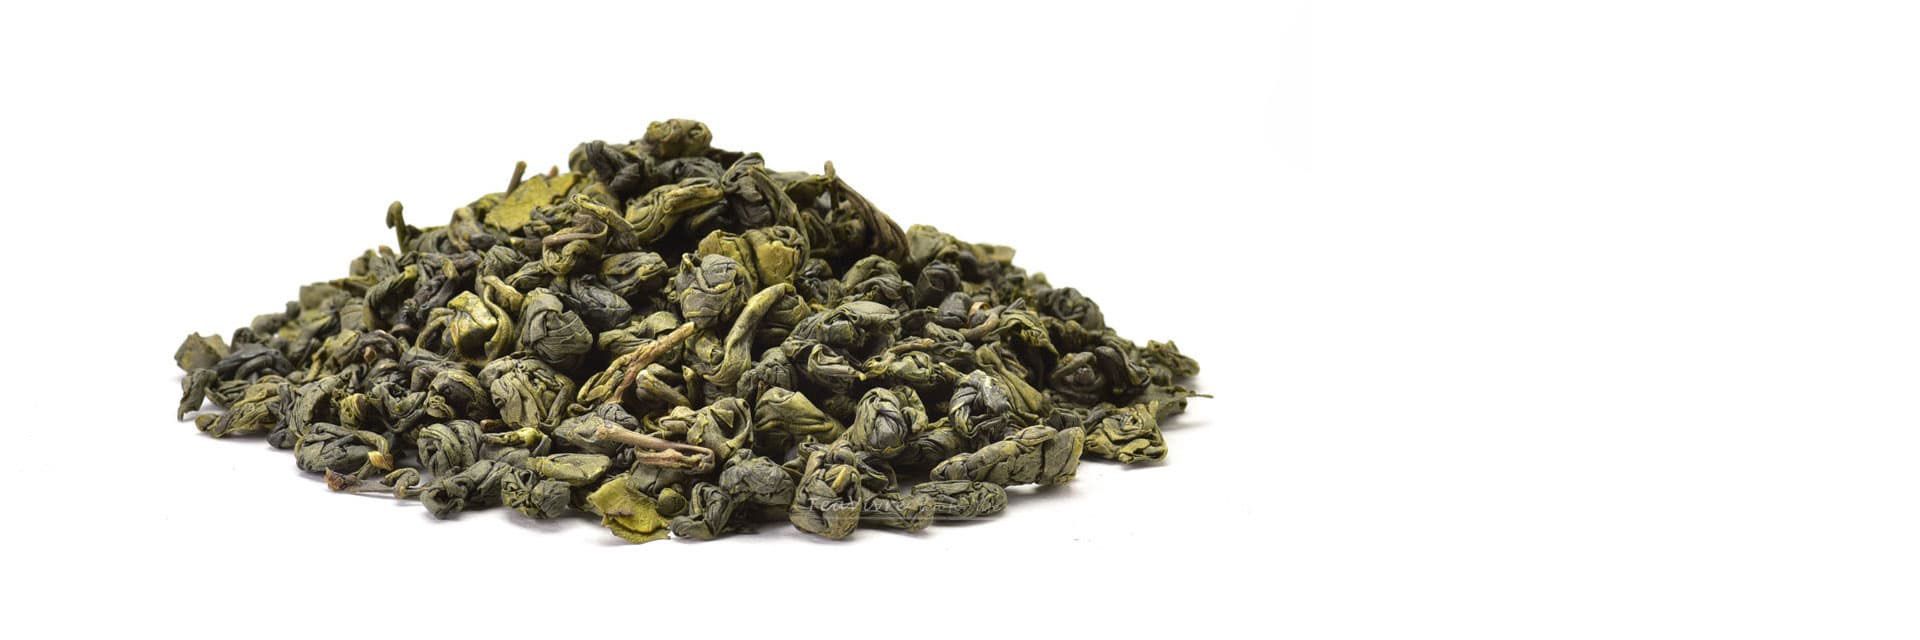 Equilibra Alimenti, Tè Verde Foglie, Varietà Gunpowder, 100% Qualità Extra,  a Base di Foglie di Tè Verde, Non Sottoposto a Fermentazione